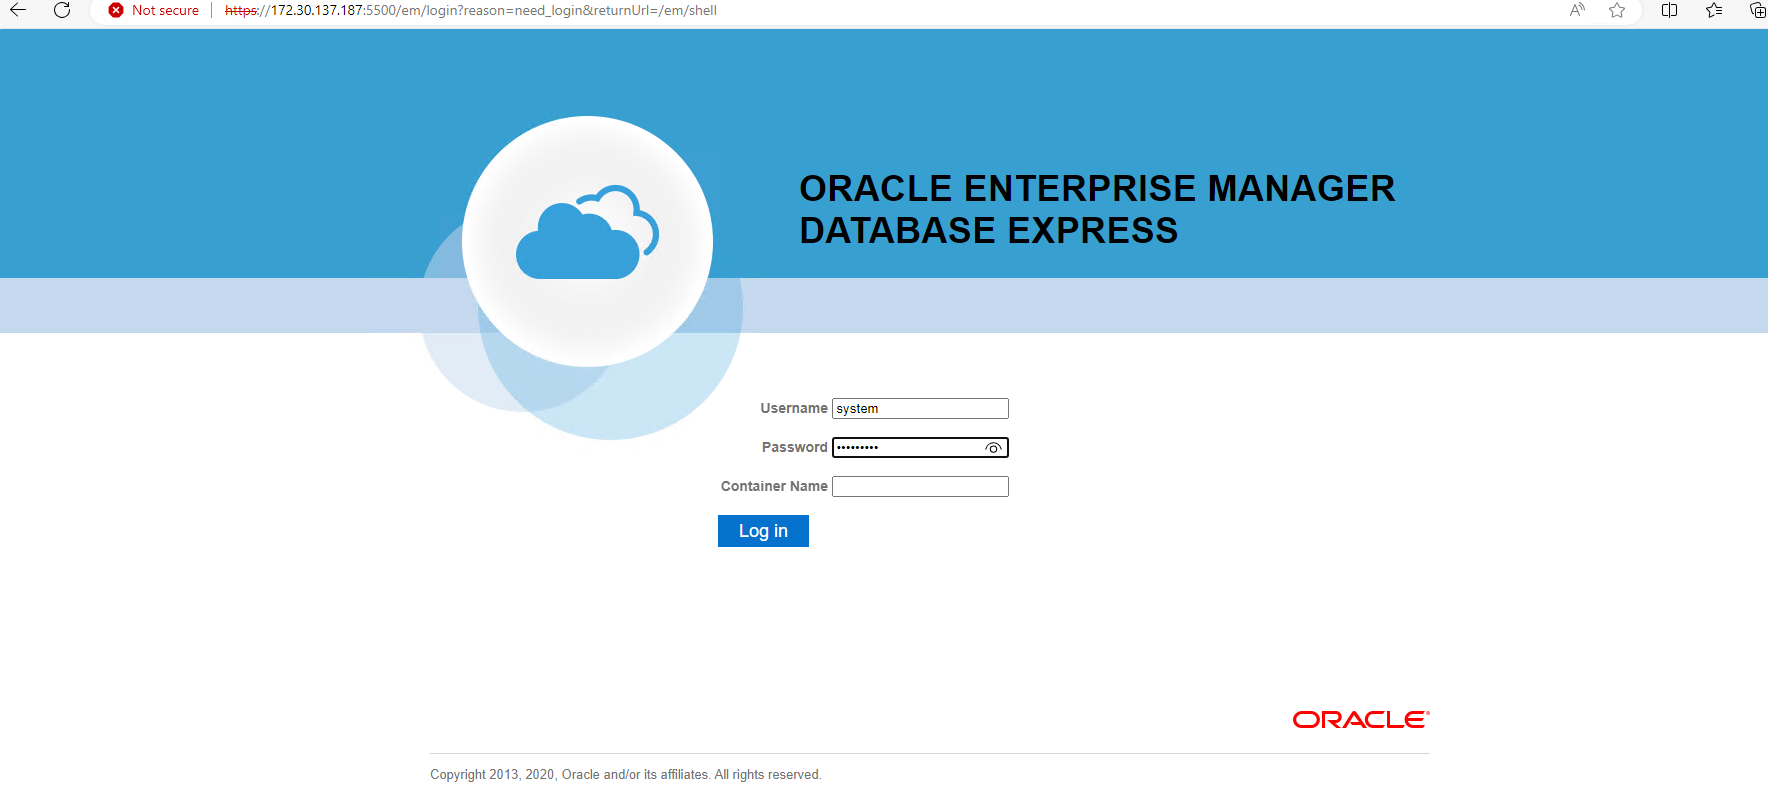 Cette image fournit un écran de connexion pour Oracle Enterprise Manager Express